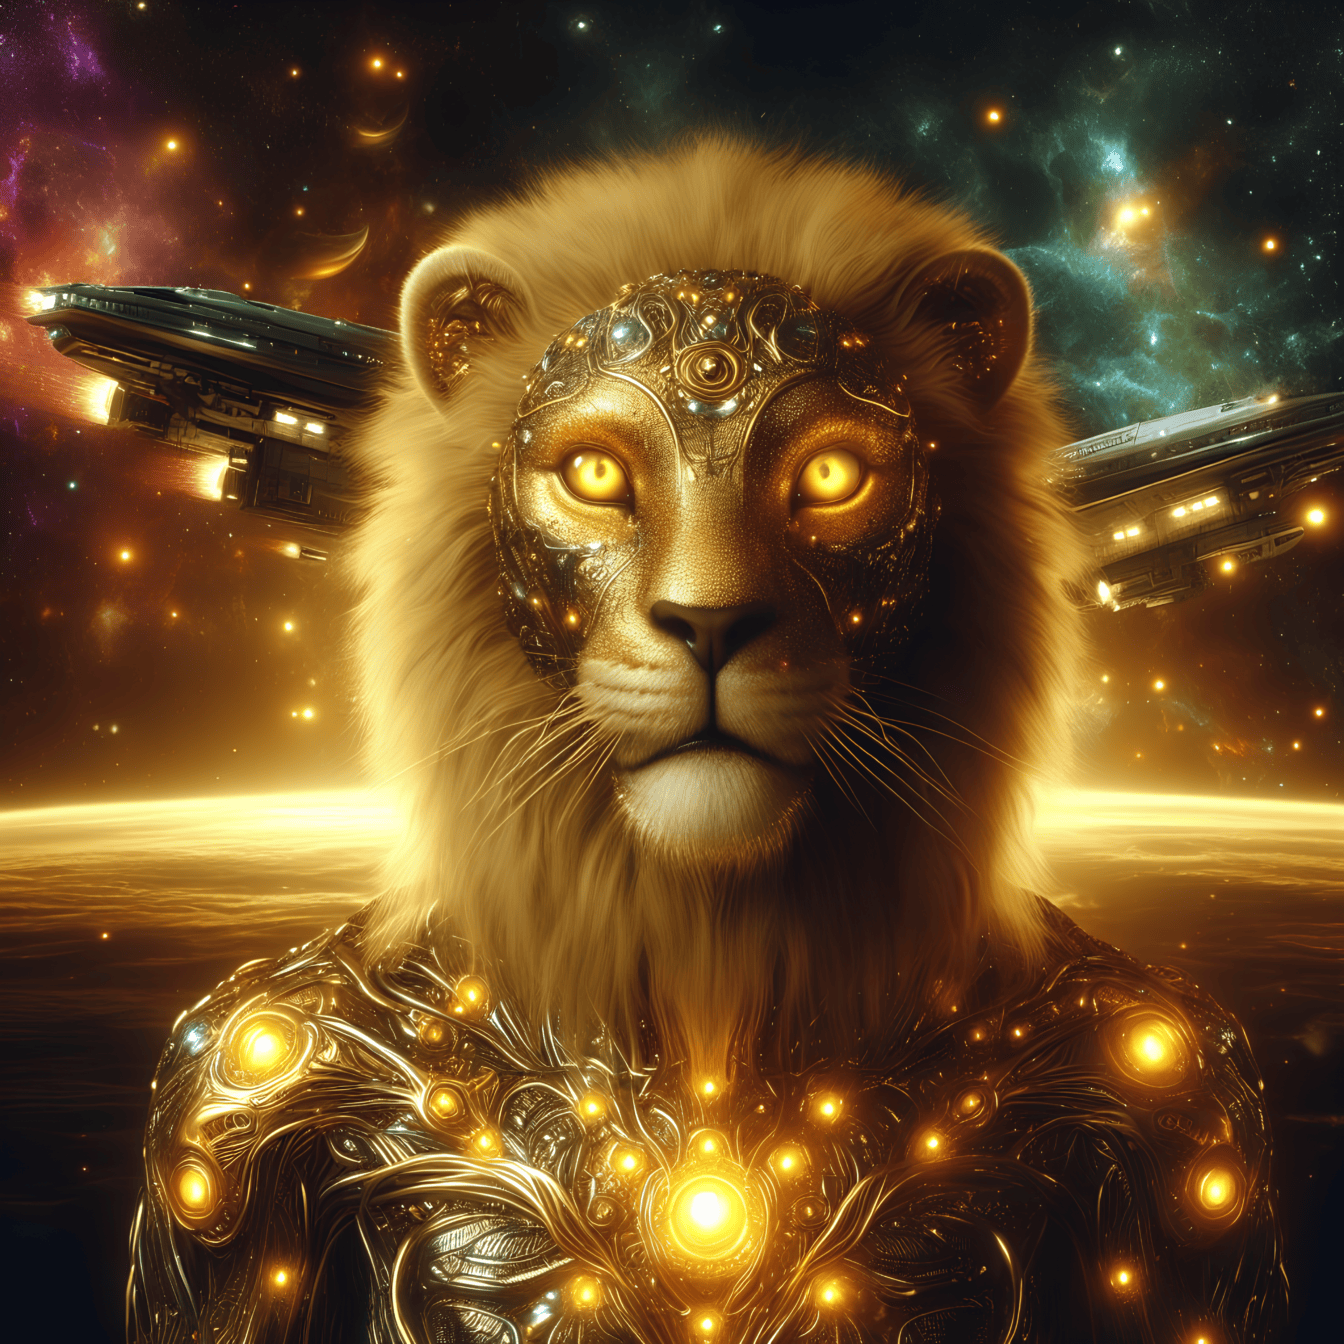 Chân dung của một vị thần vàng, một người ngoài hành tinh sư tử-cyborg trong bộ giáp phát sáng với tàu vũ trụ ở phía sau